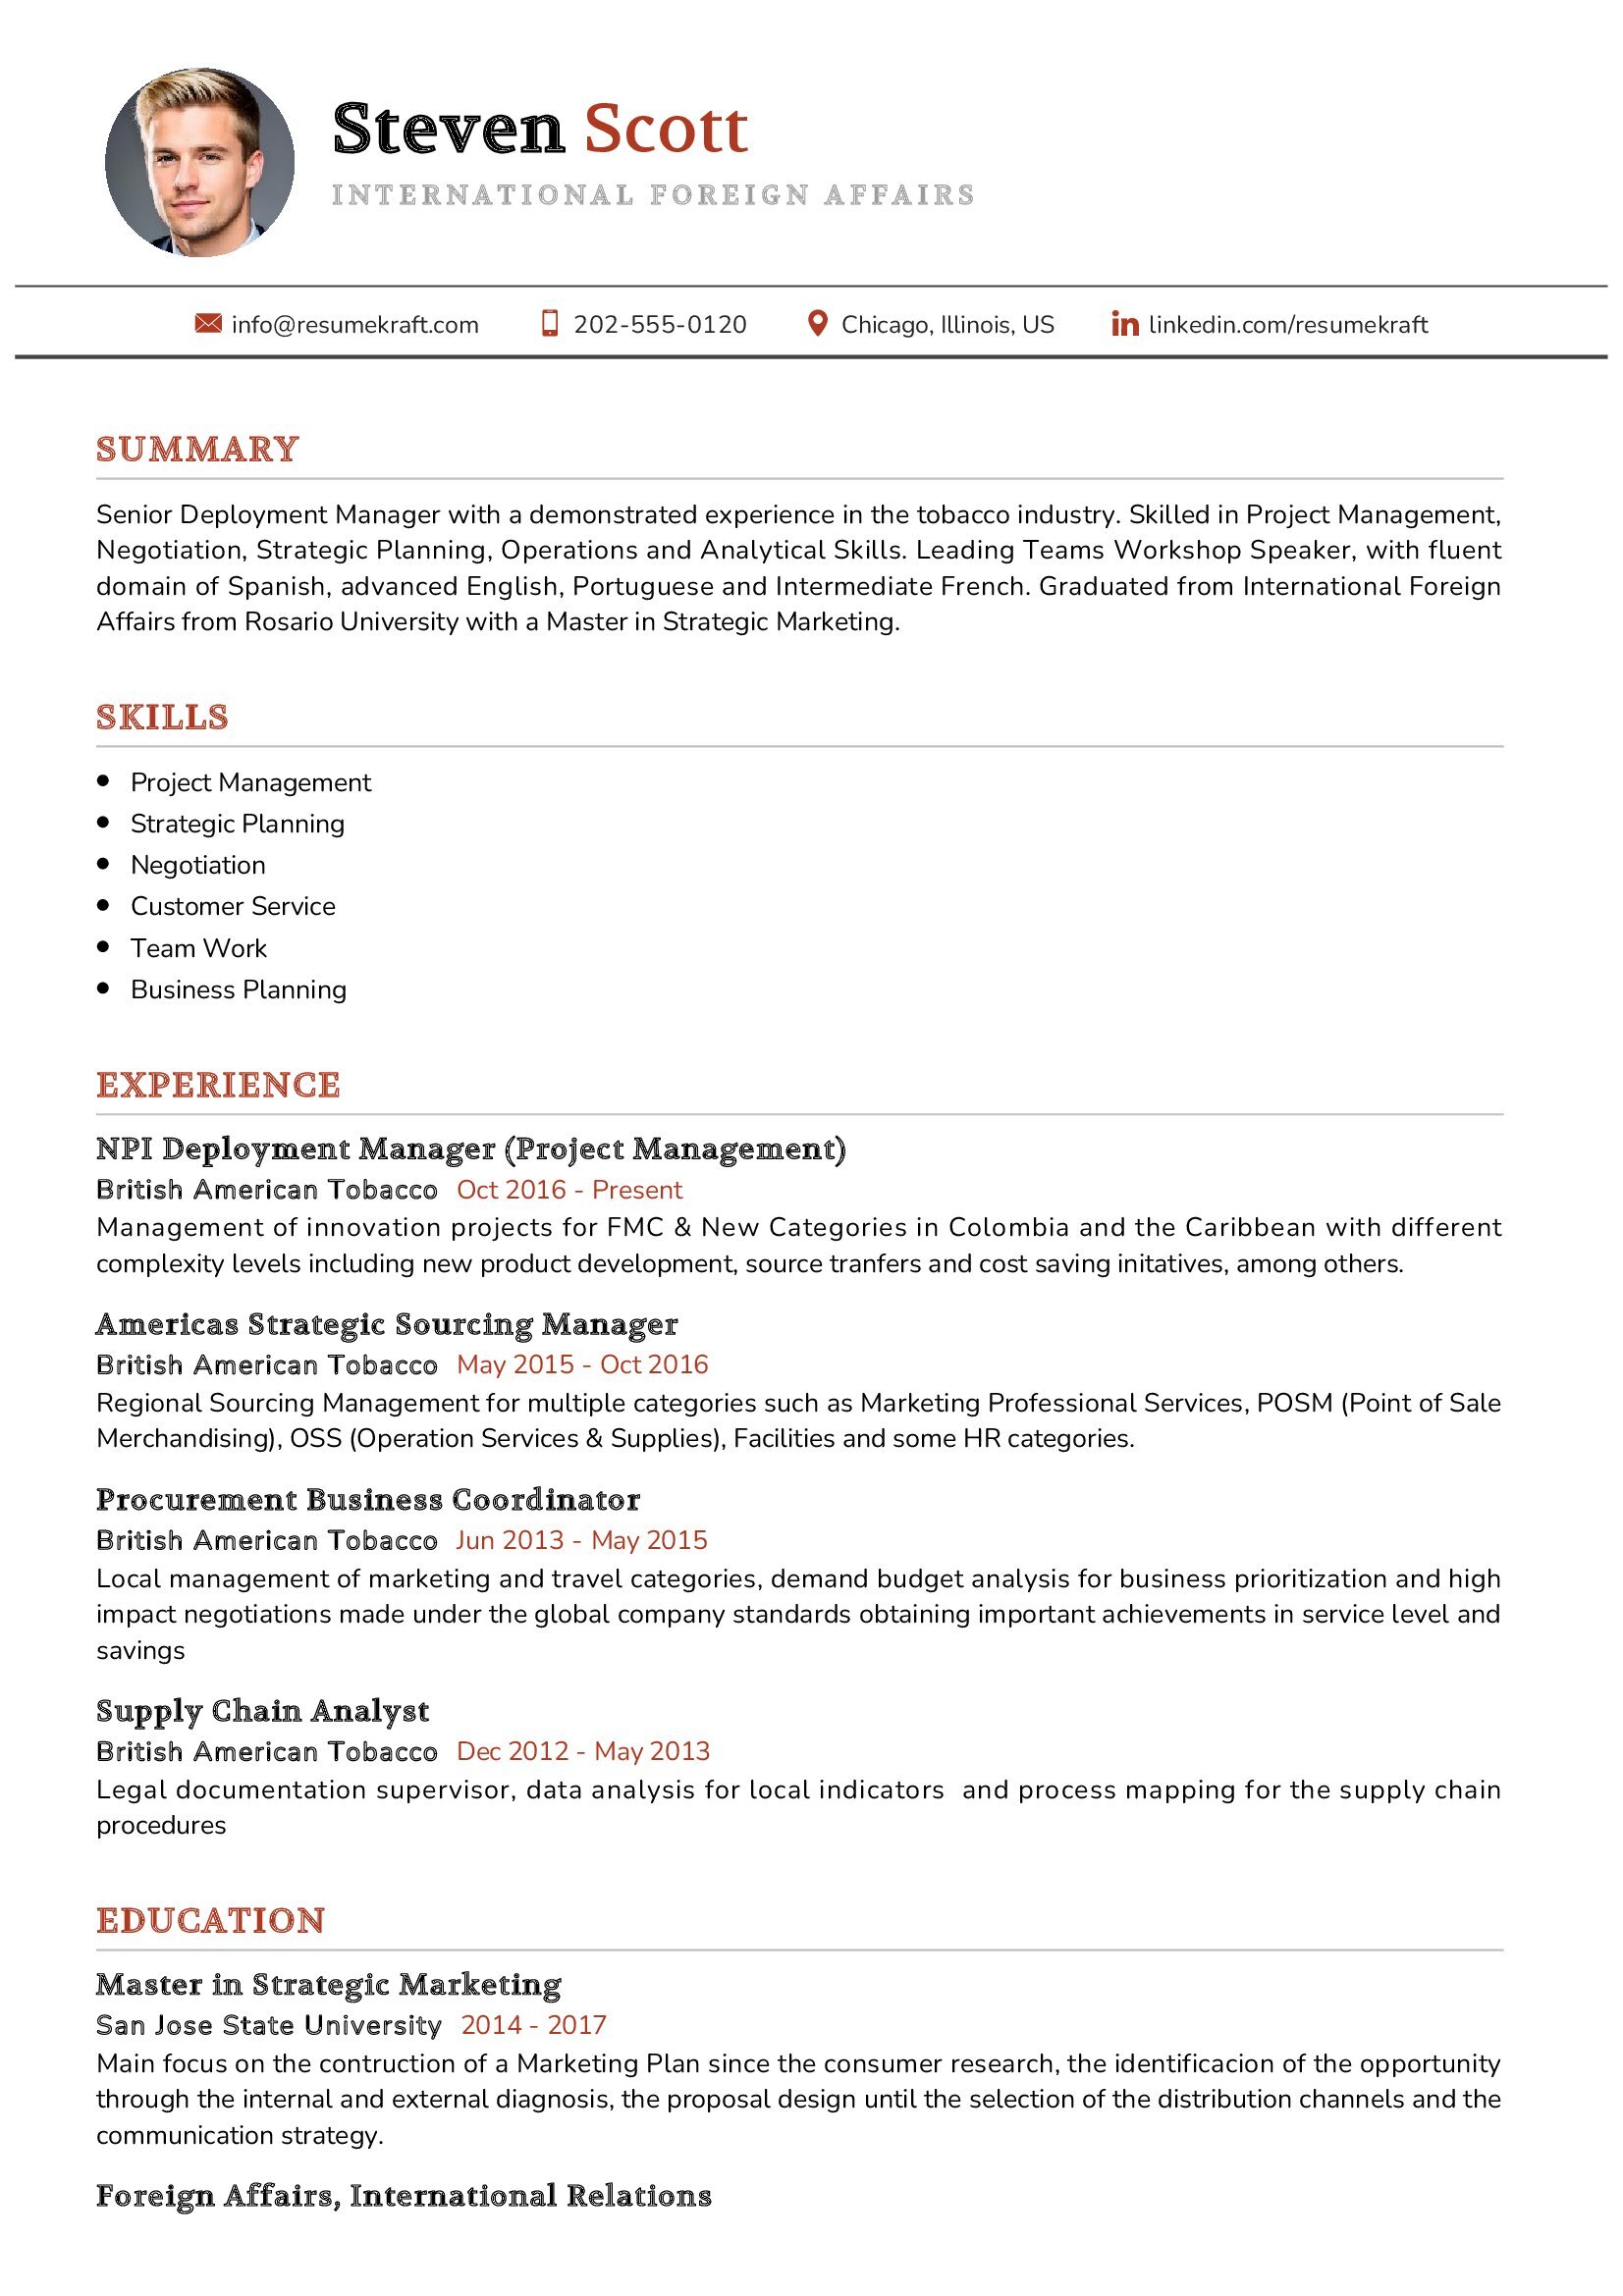 resume sample for international